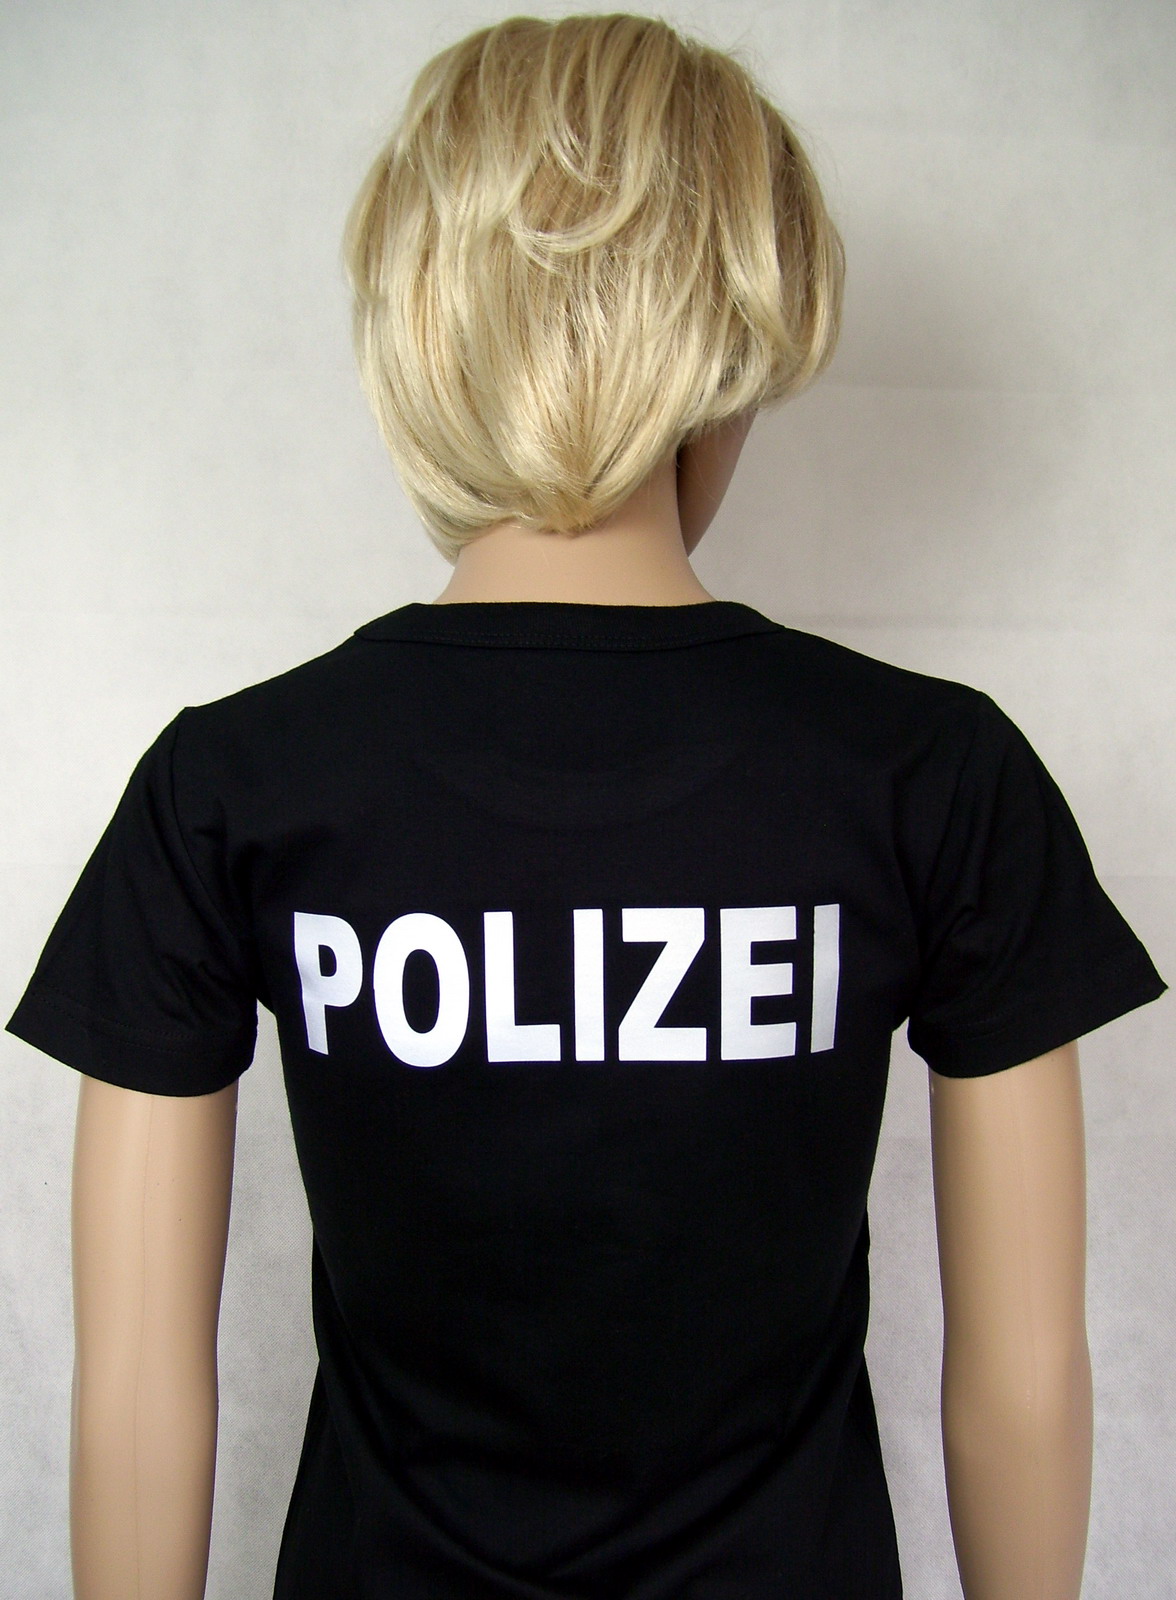 POLIZEI T-Shirt Textilfarbe schwarz  oder marineblau versch Druckfarben P2 